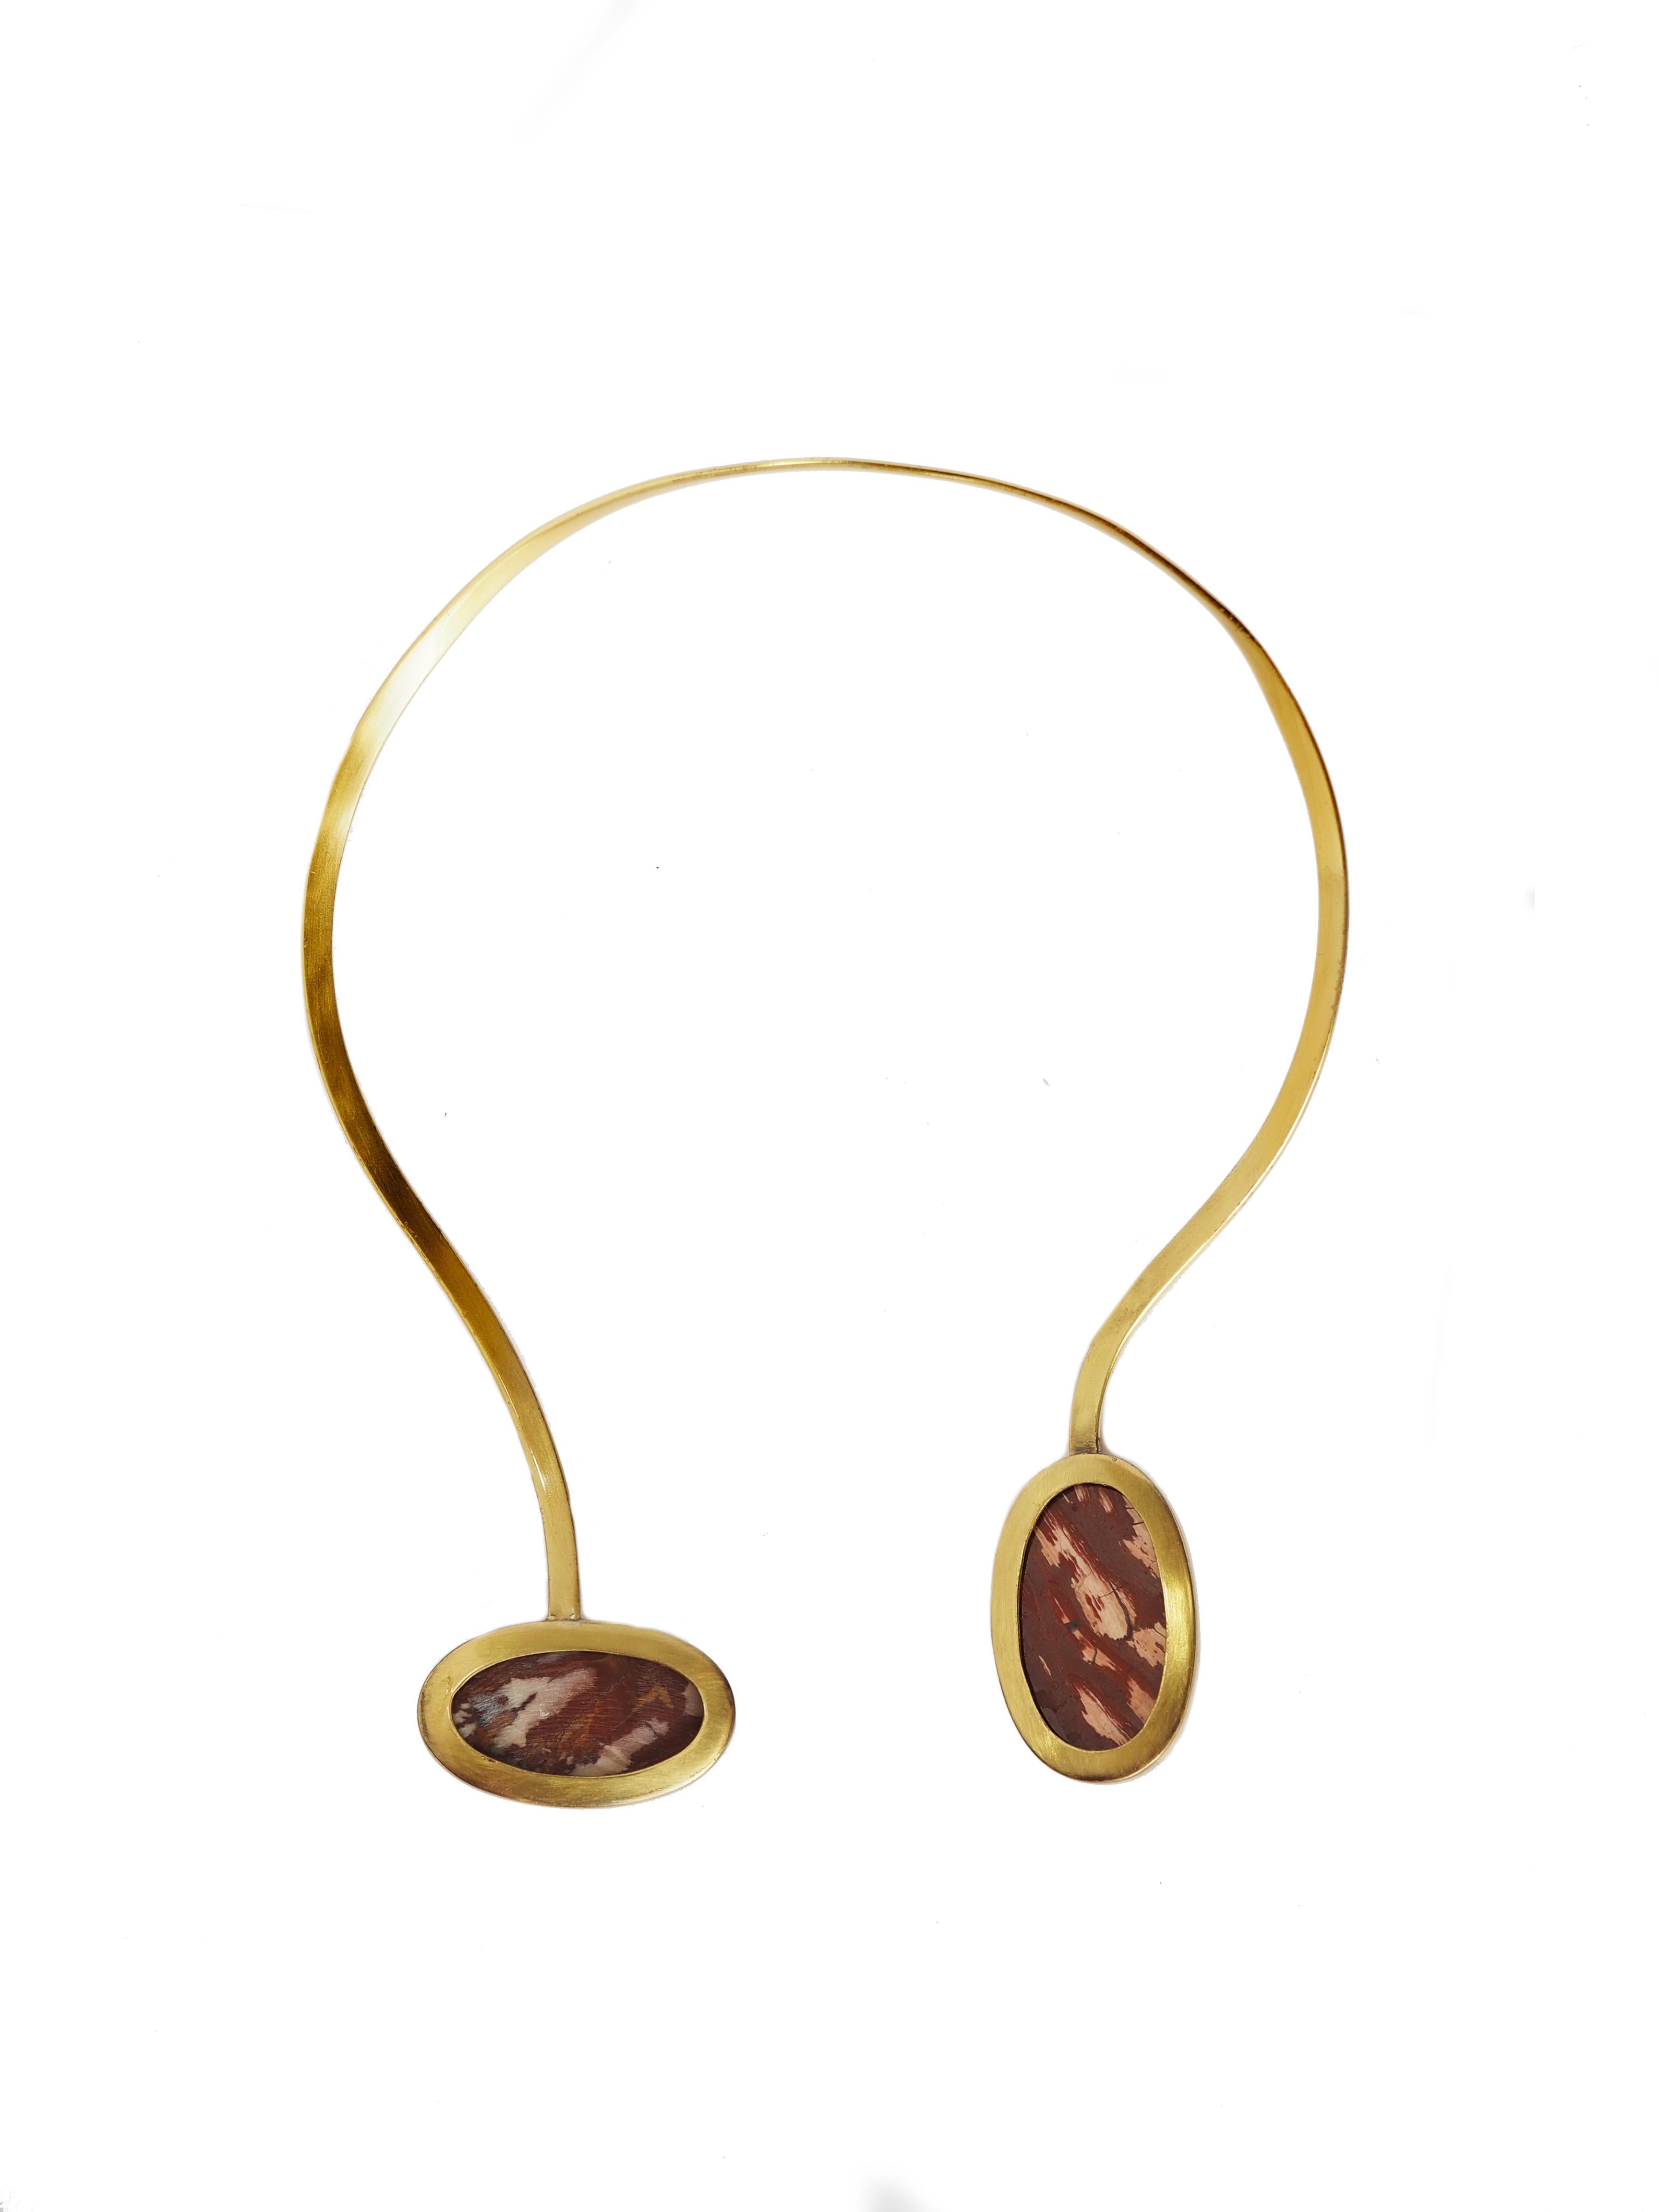 collier asymétrique avec 2 étonnants jaspes de forme ovale reliés en bronze.
Tous les bijoux Giulia Colussi sont neufs et n'ont jamais été portés ou possédés auparavant. Chaque article arrivera à votre porte joliment emballé dans nos boîtes, placé